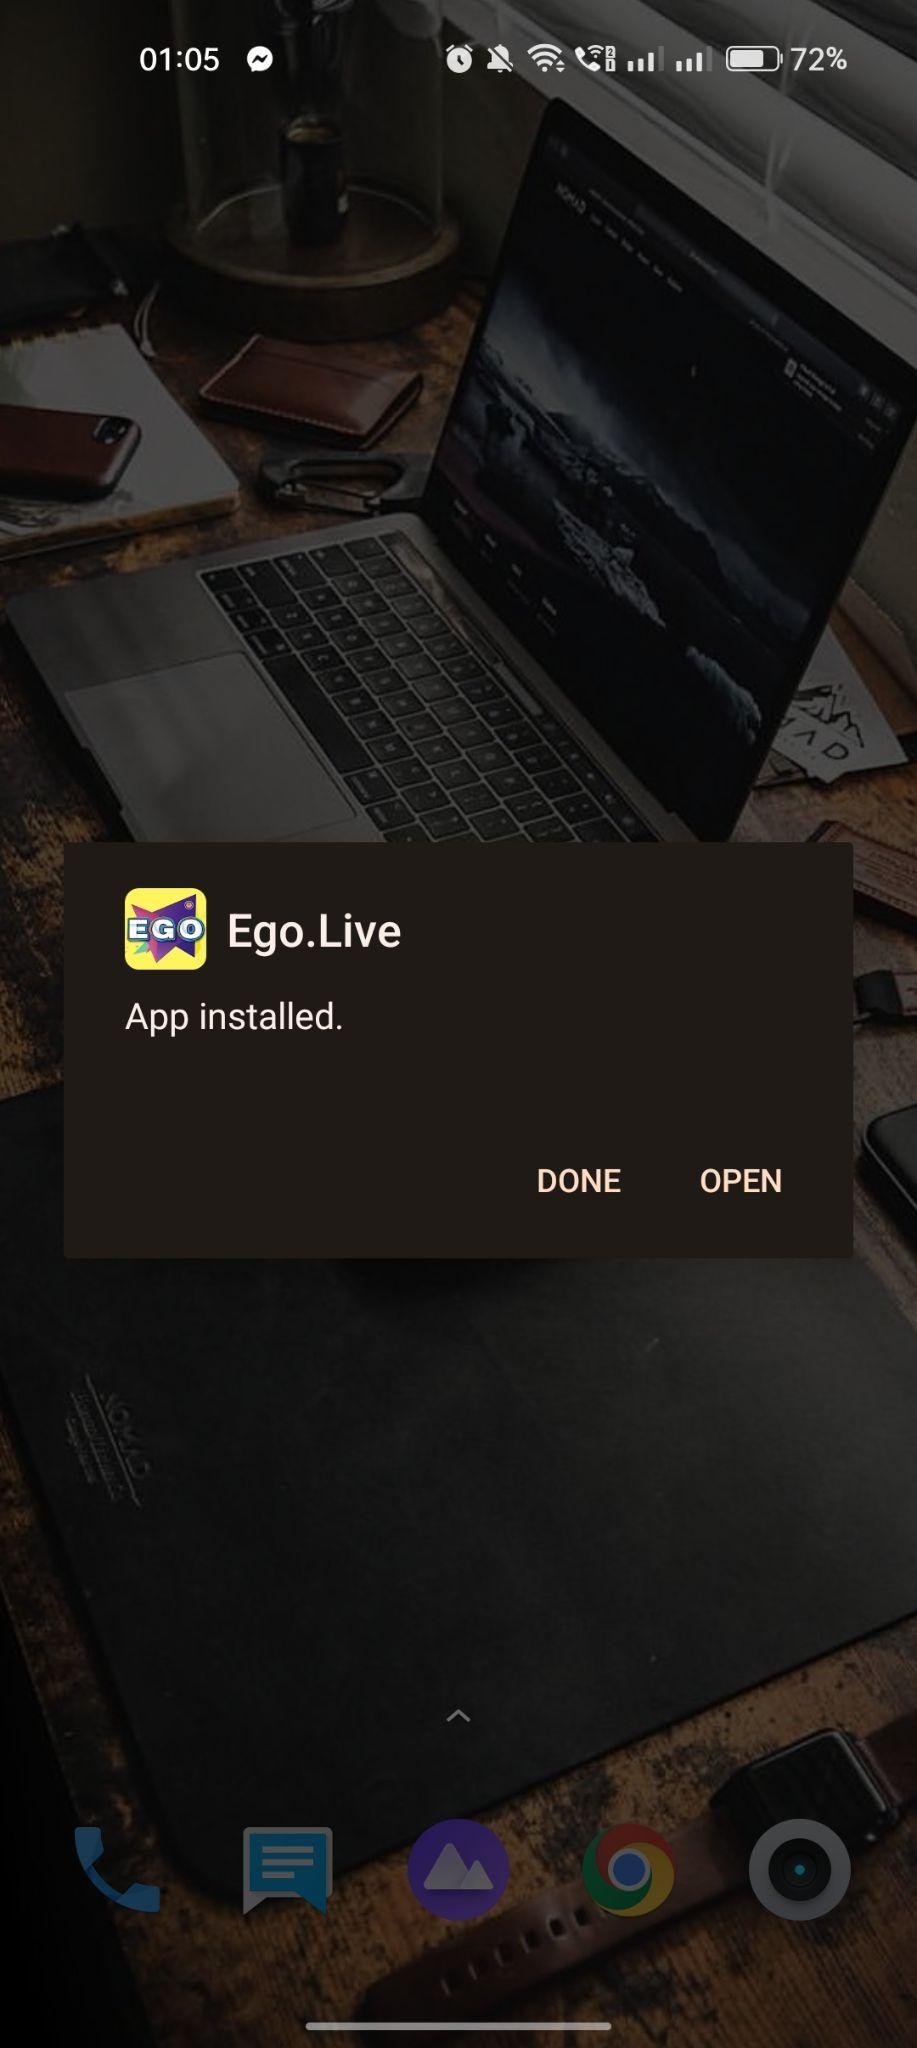 Ego.Live apk installed